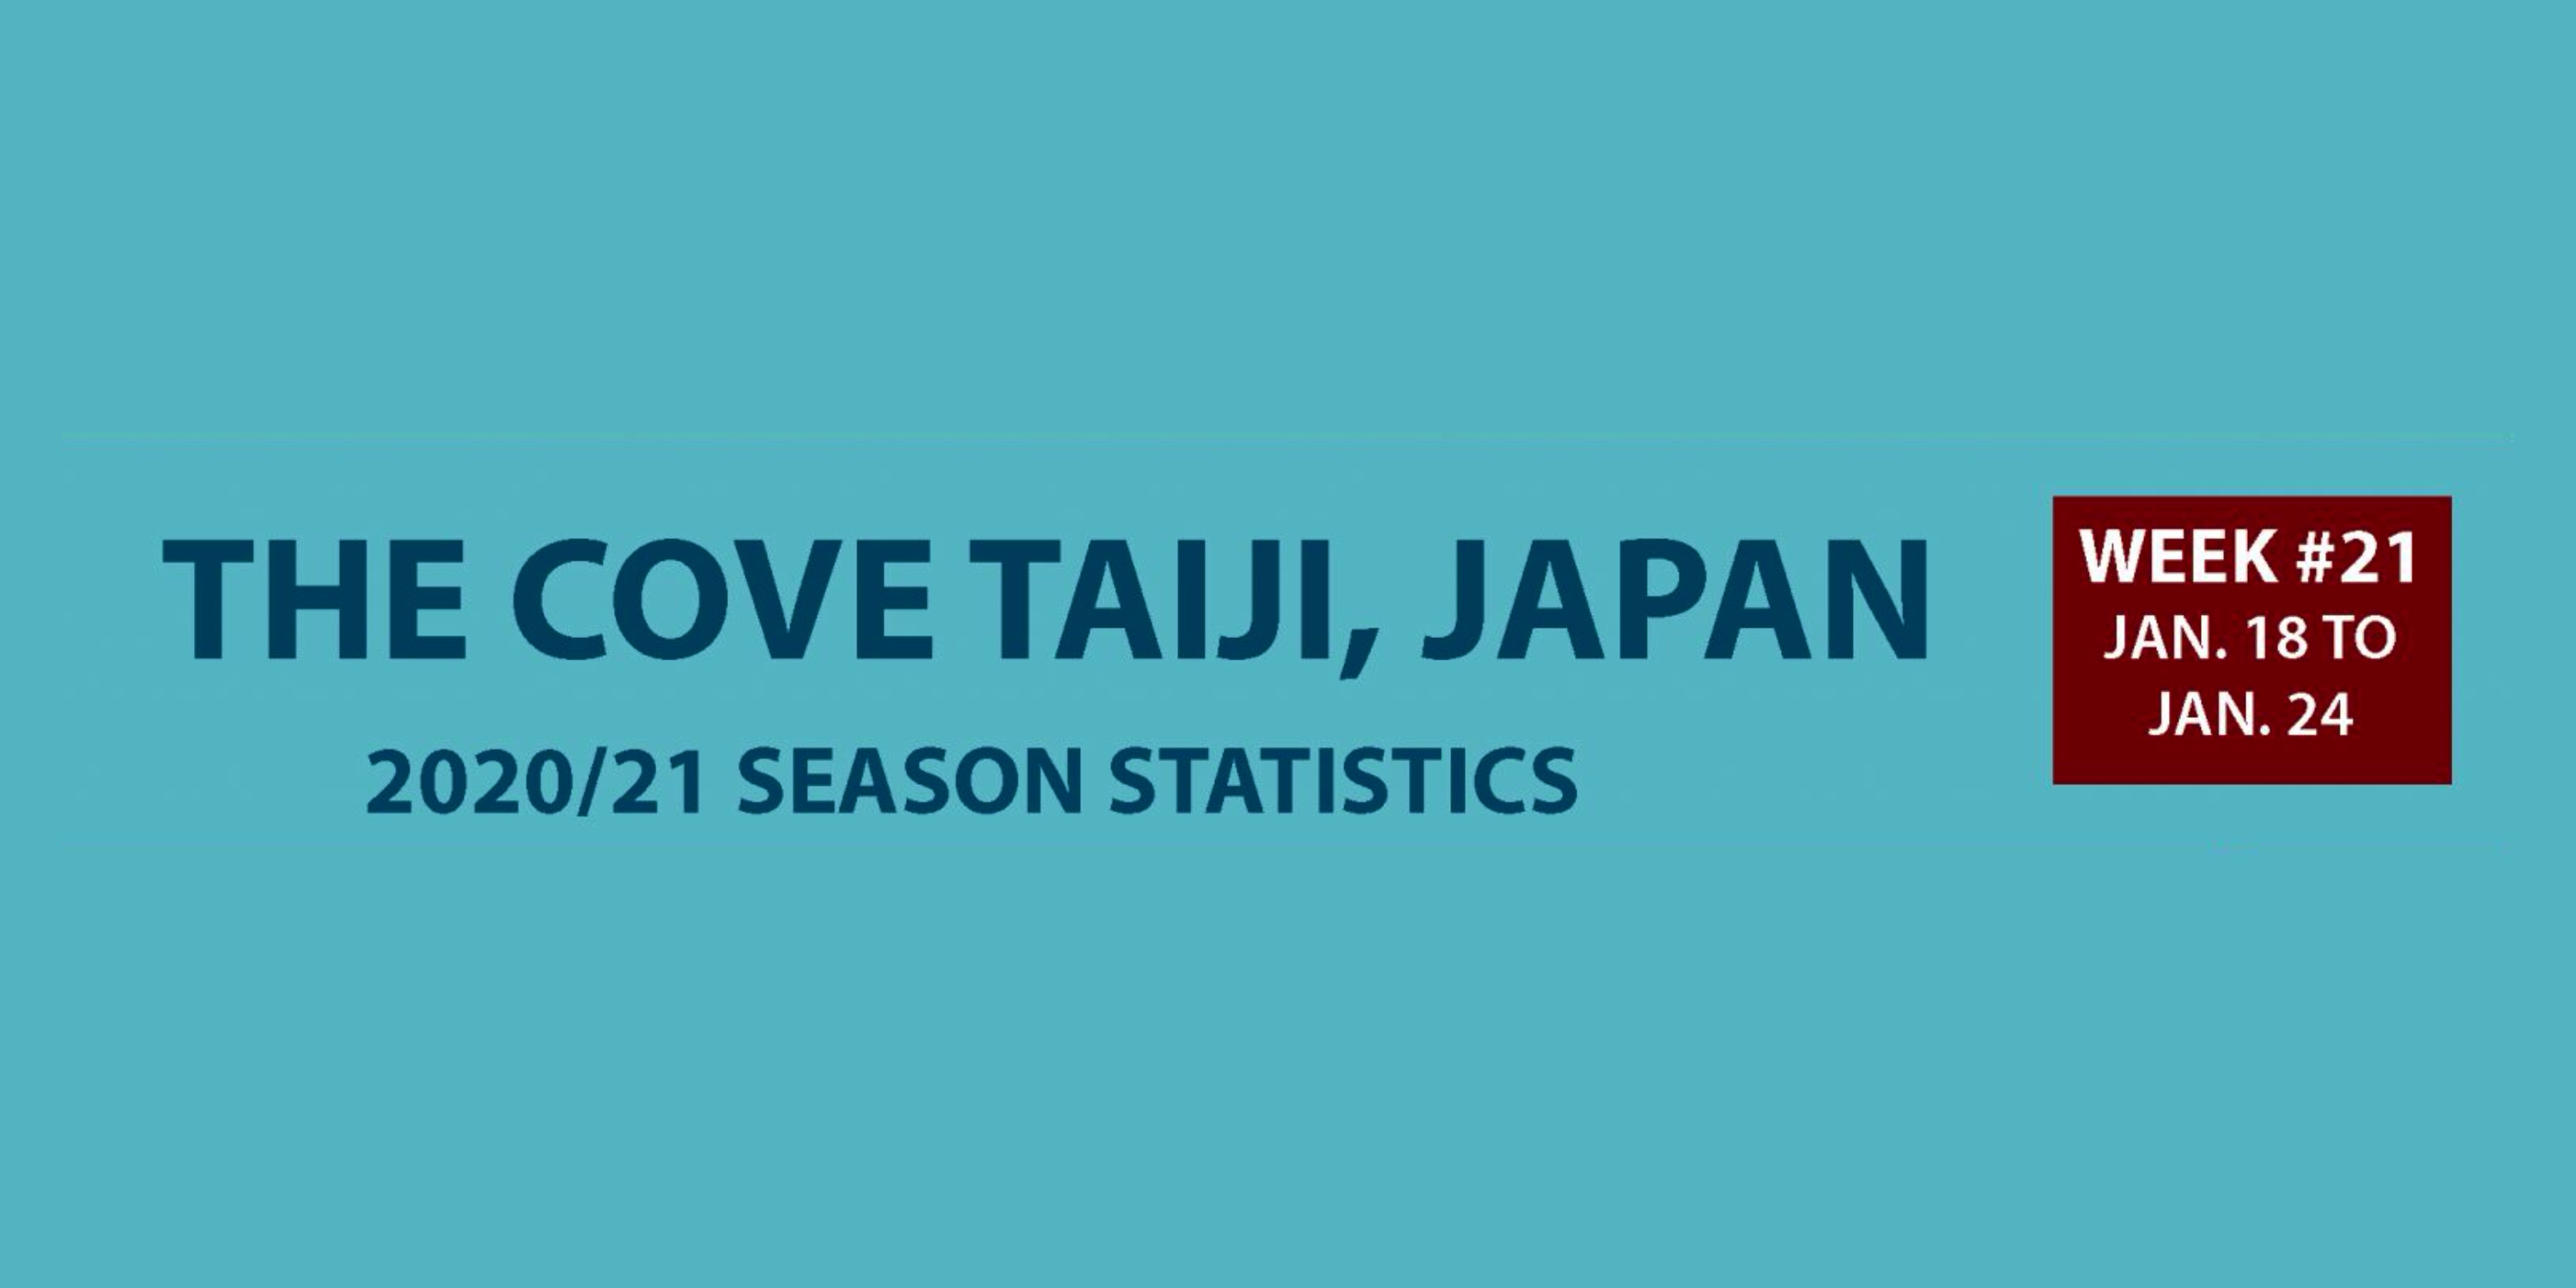 Chasse au dauphin à Taïji (Japon) – Bilan semaine du 18 au 24 janvier 2021 #21